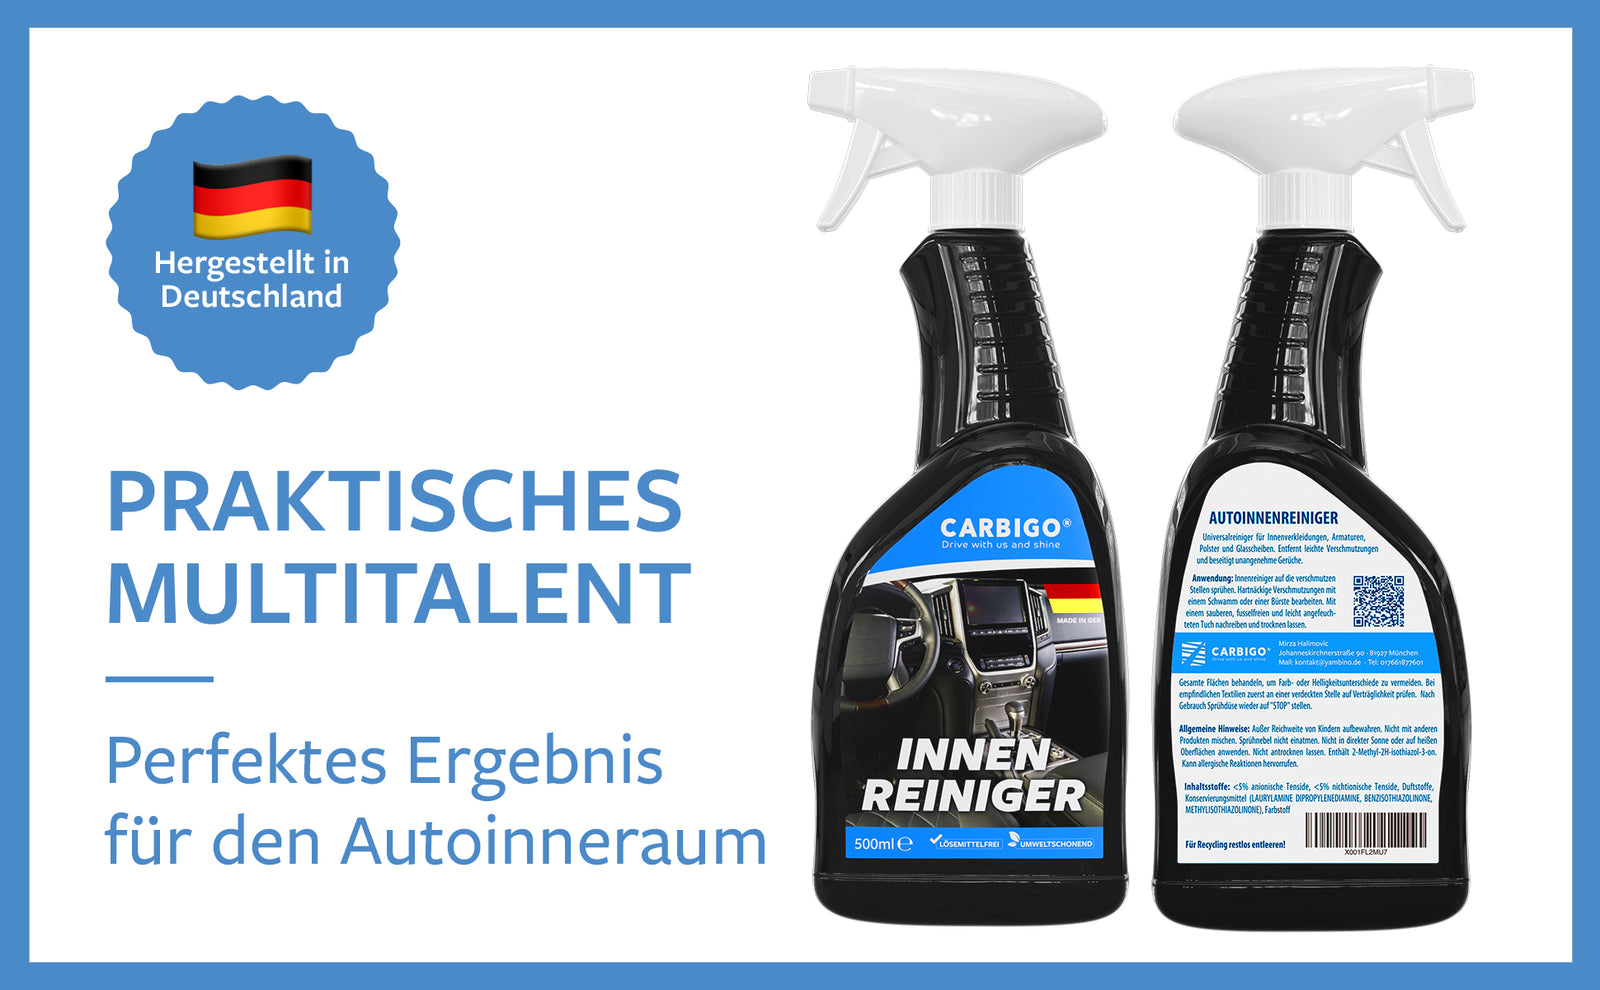 Praktisch und vielseitig einsetzbar, ist Carbigo® perfekt zur Reinigung des Inneren Ihres Autos.